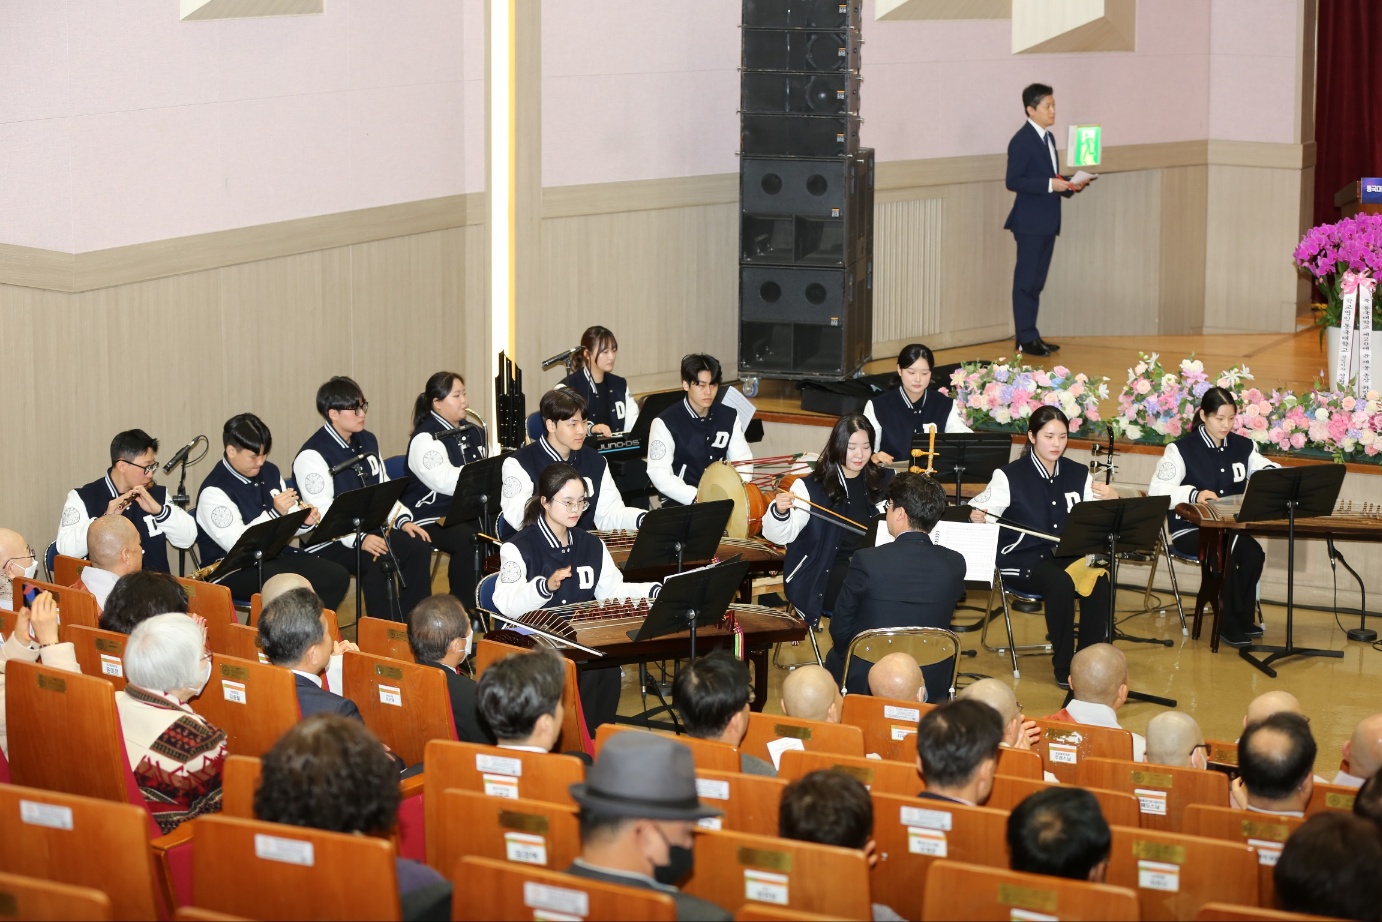 한국음악과 23학번 신입생들 중 기악파트 학생들이 제20대 윤재웅 총장 취임식에서 축하공연 연주를 하고 있다